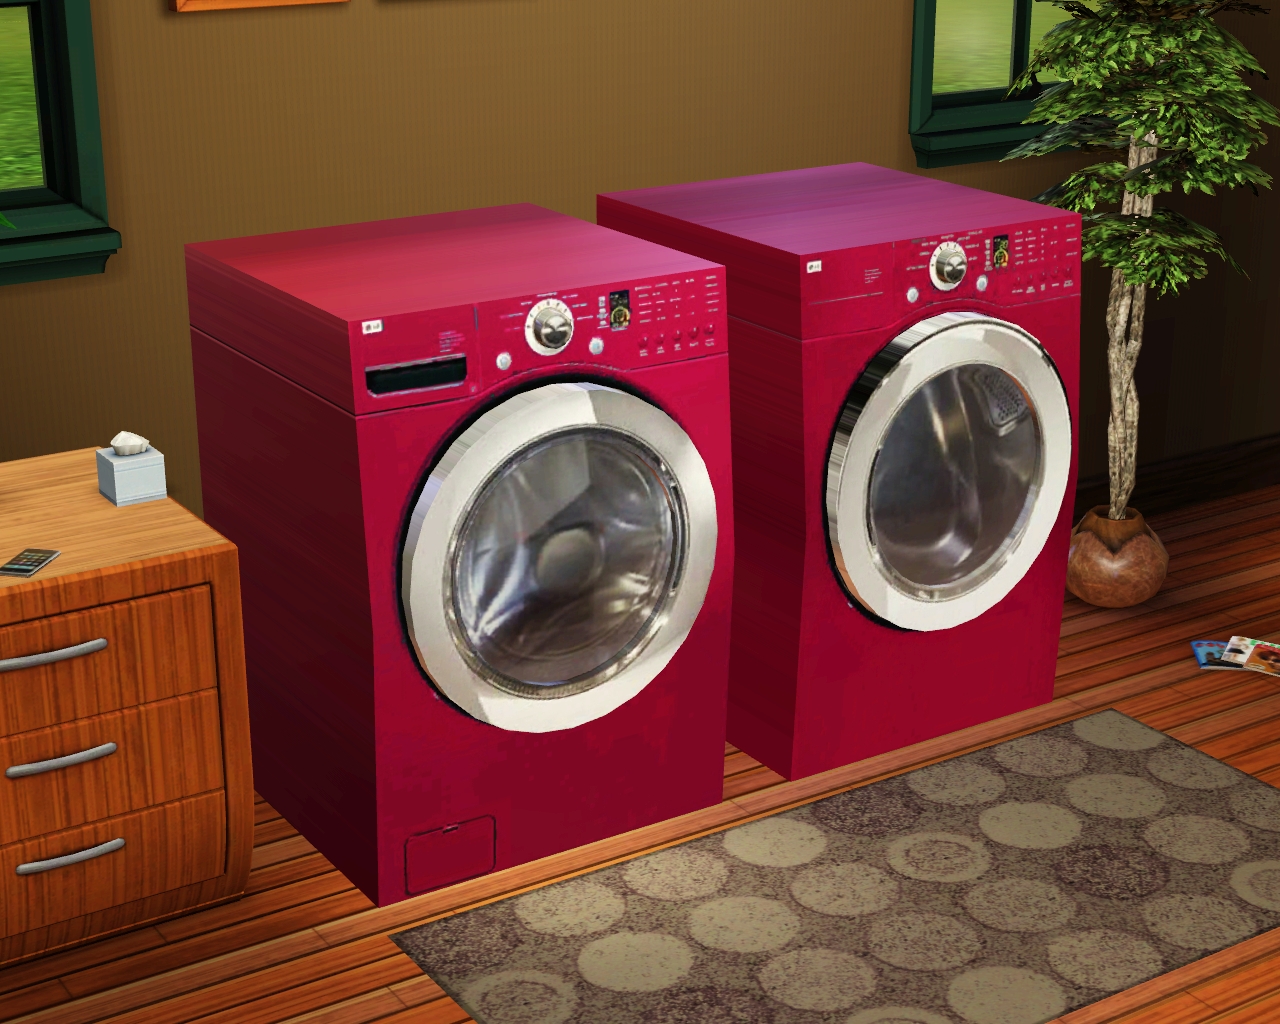 Washing Machine The Sims 4 nákup zdržanlivosť s časom washing machine sims 4 Vlak netrpezlivý bojler